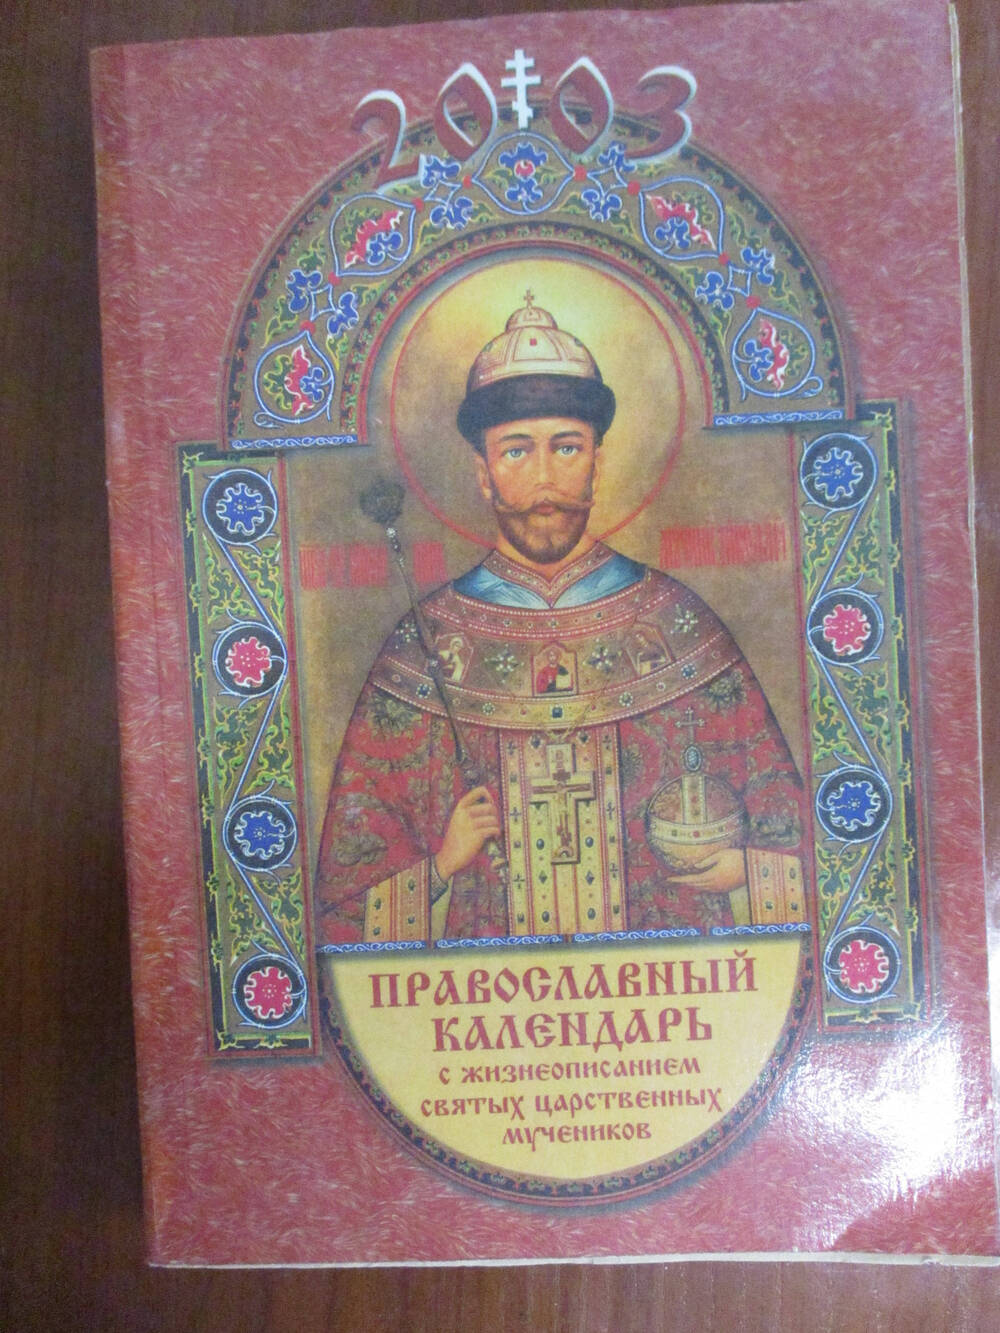 Православный календарь 2003г.